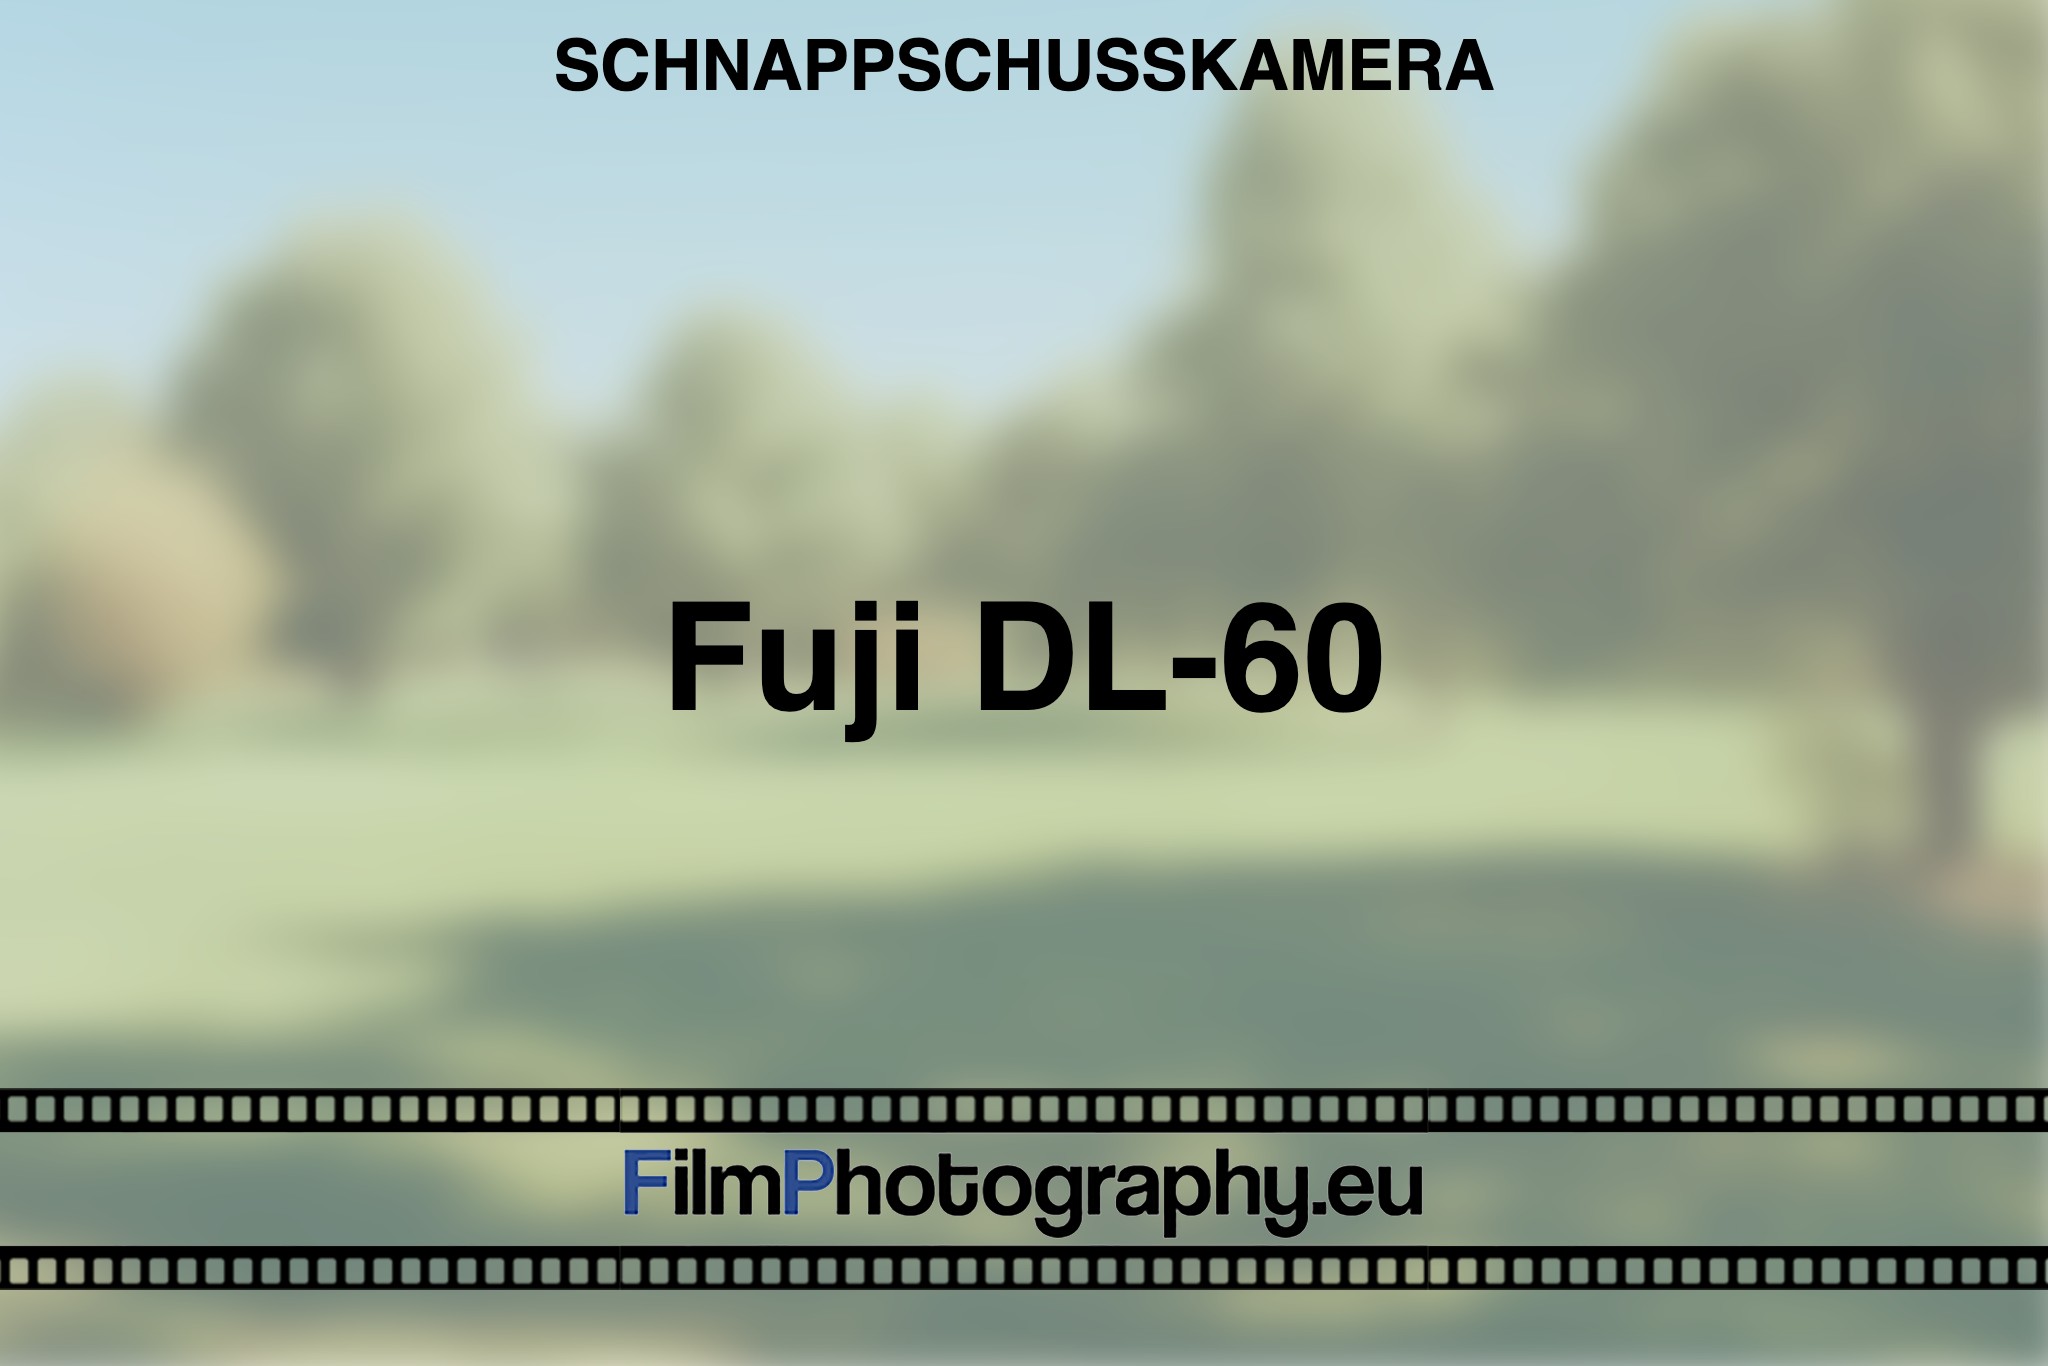 fuji-dl-60-schnappschusskamera-bnv